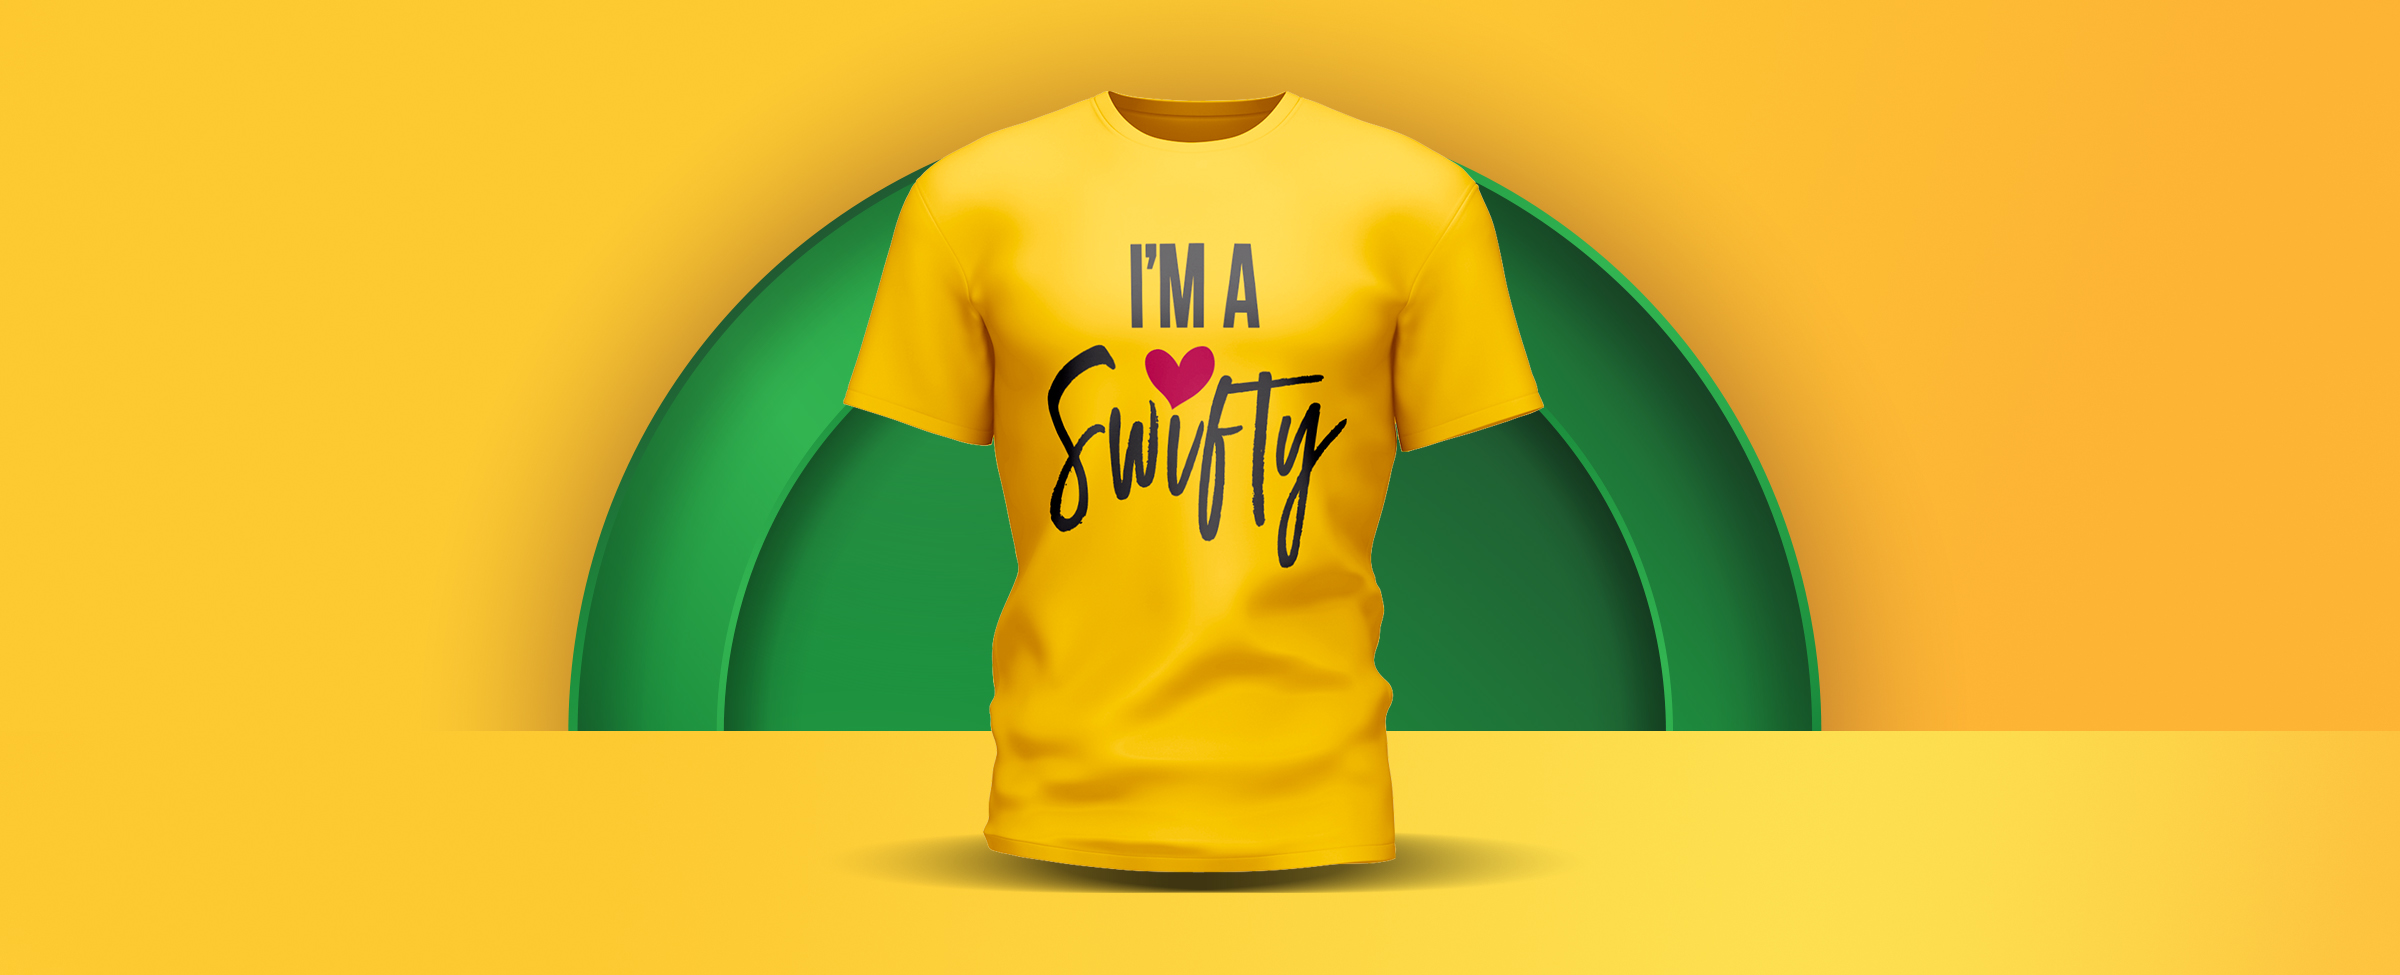 A t-shirt with “I’m a Swifty” on it on a yellow background